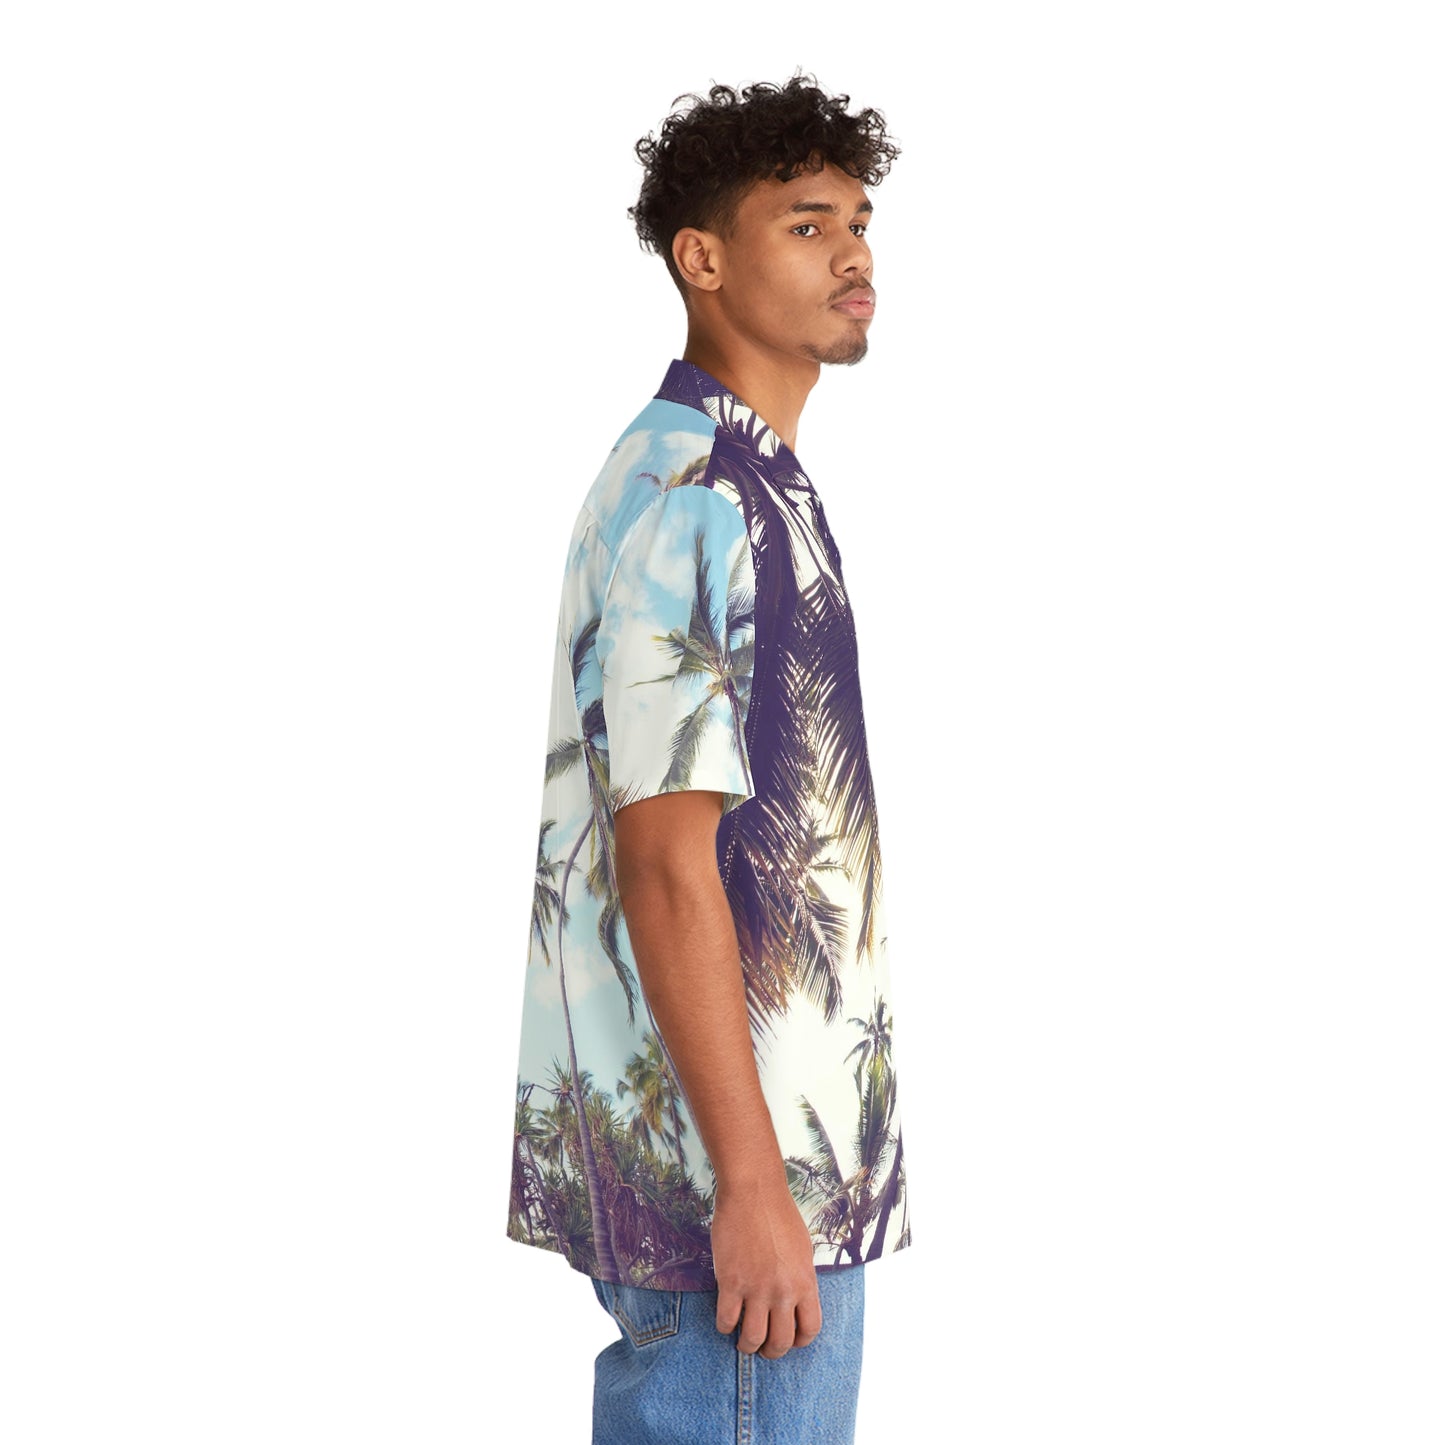 Beverly Hills palm leaves Men's Hawaiian Shirt (AOP)